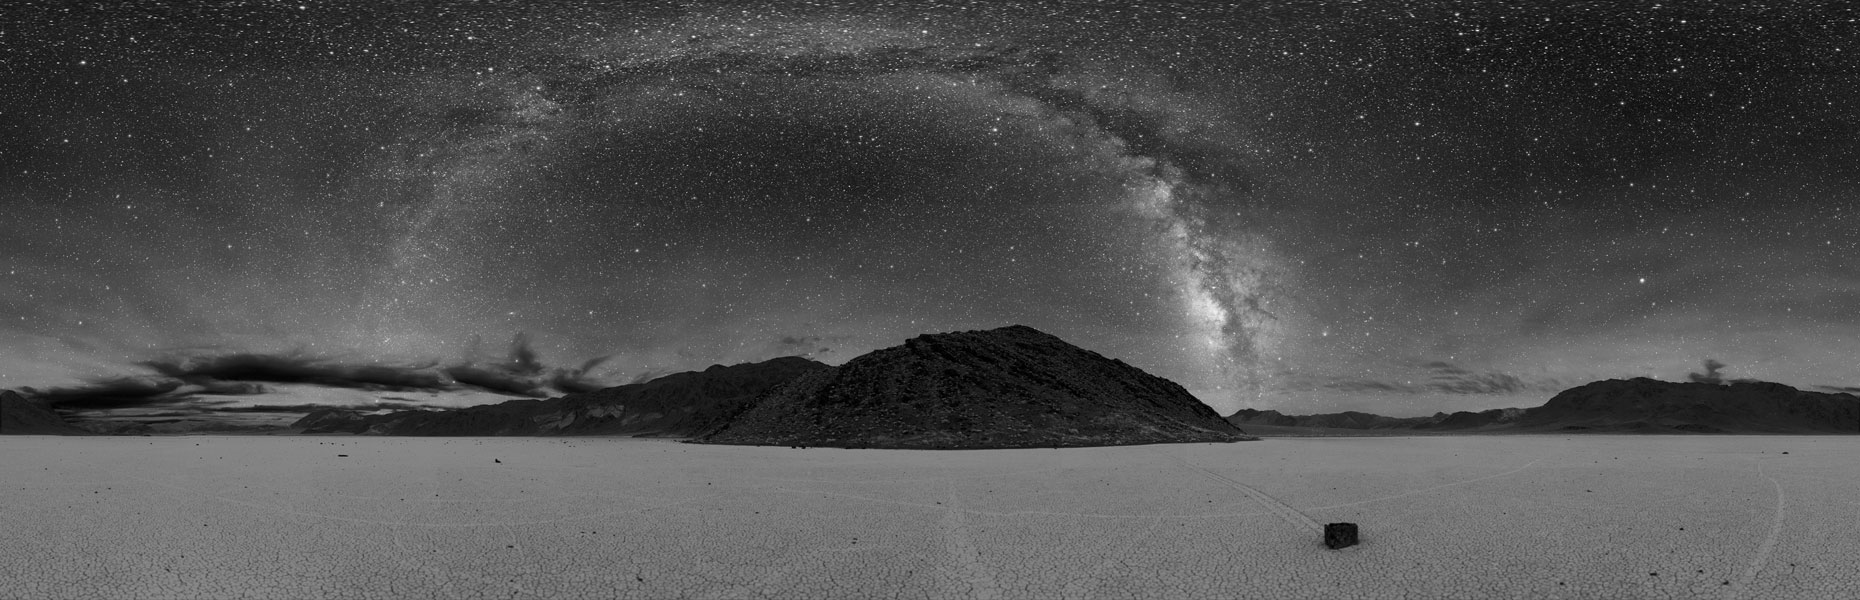 Über einem Panorama mit glatten Wüstenboden und Bergen im Hintergrund wölbt sich die Milchstraße.